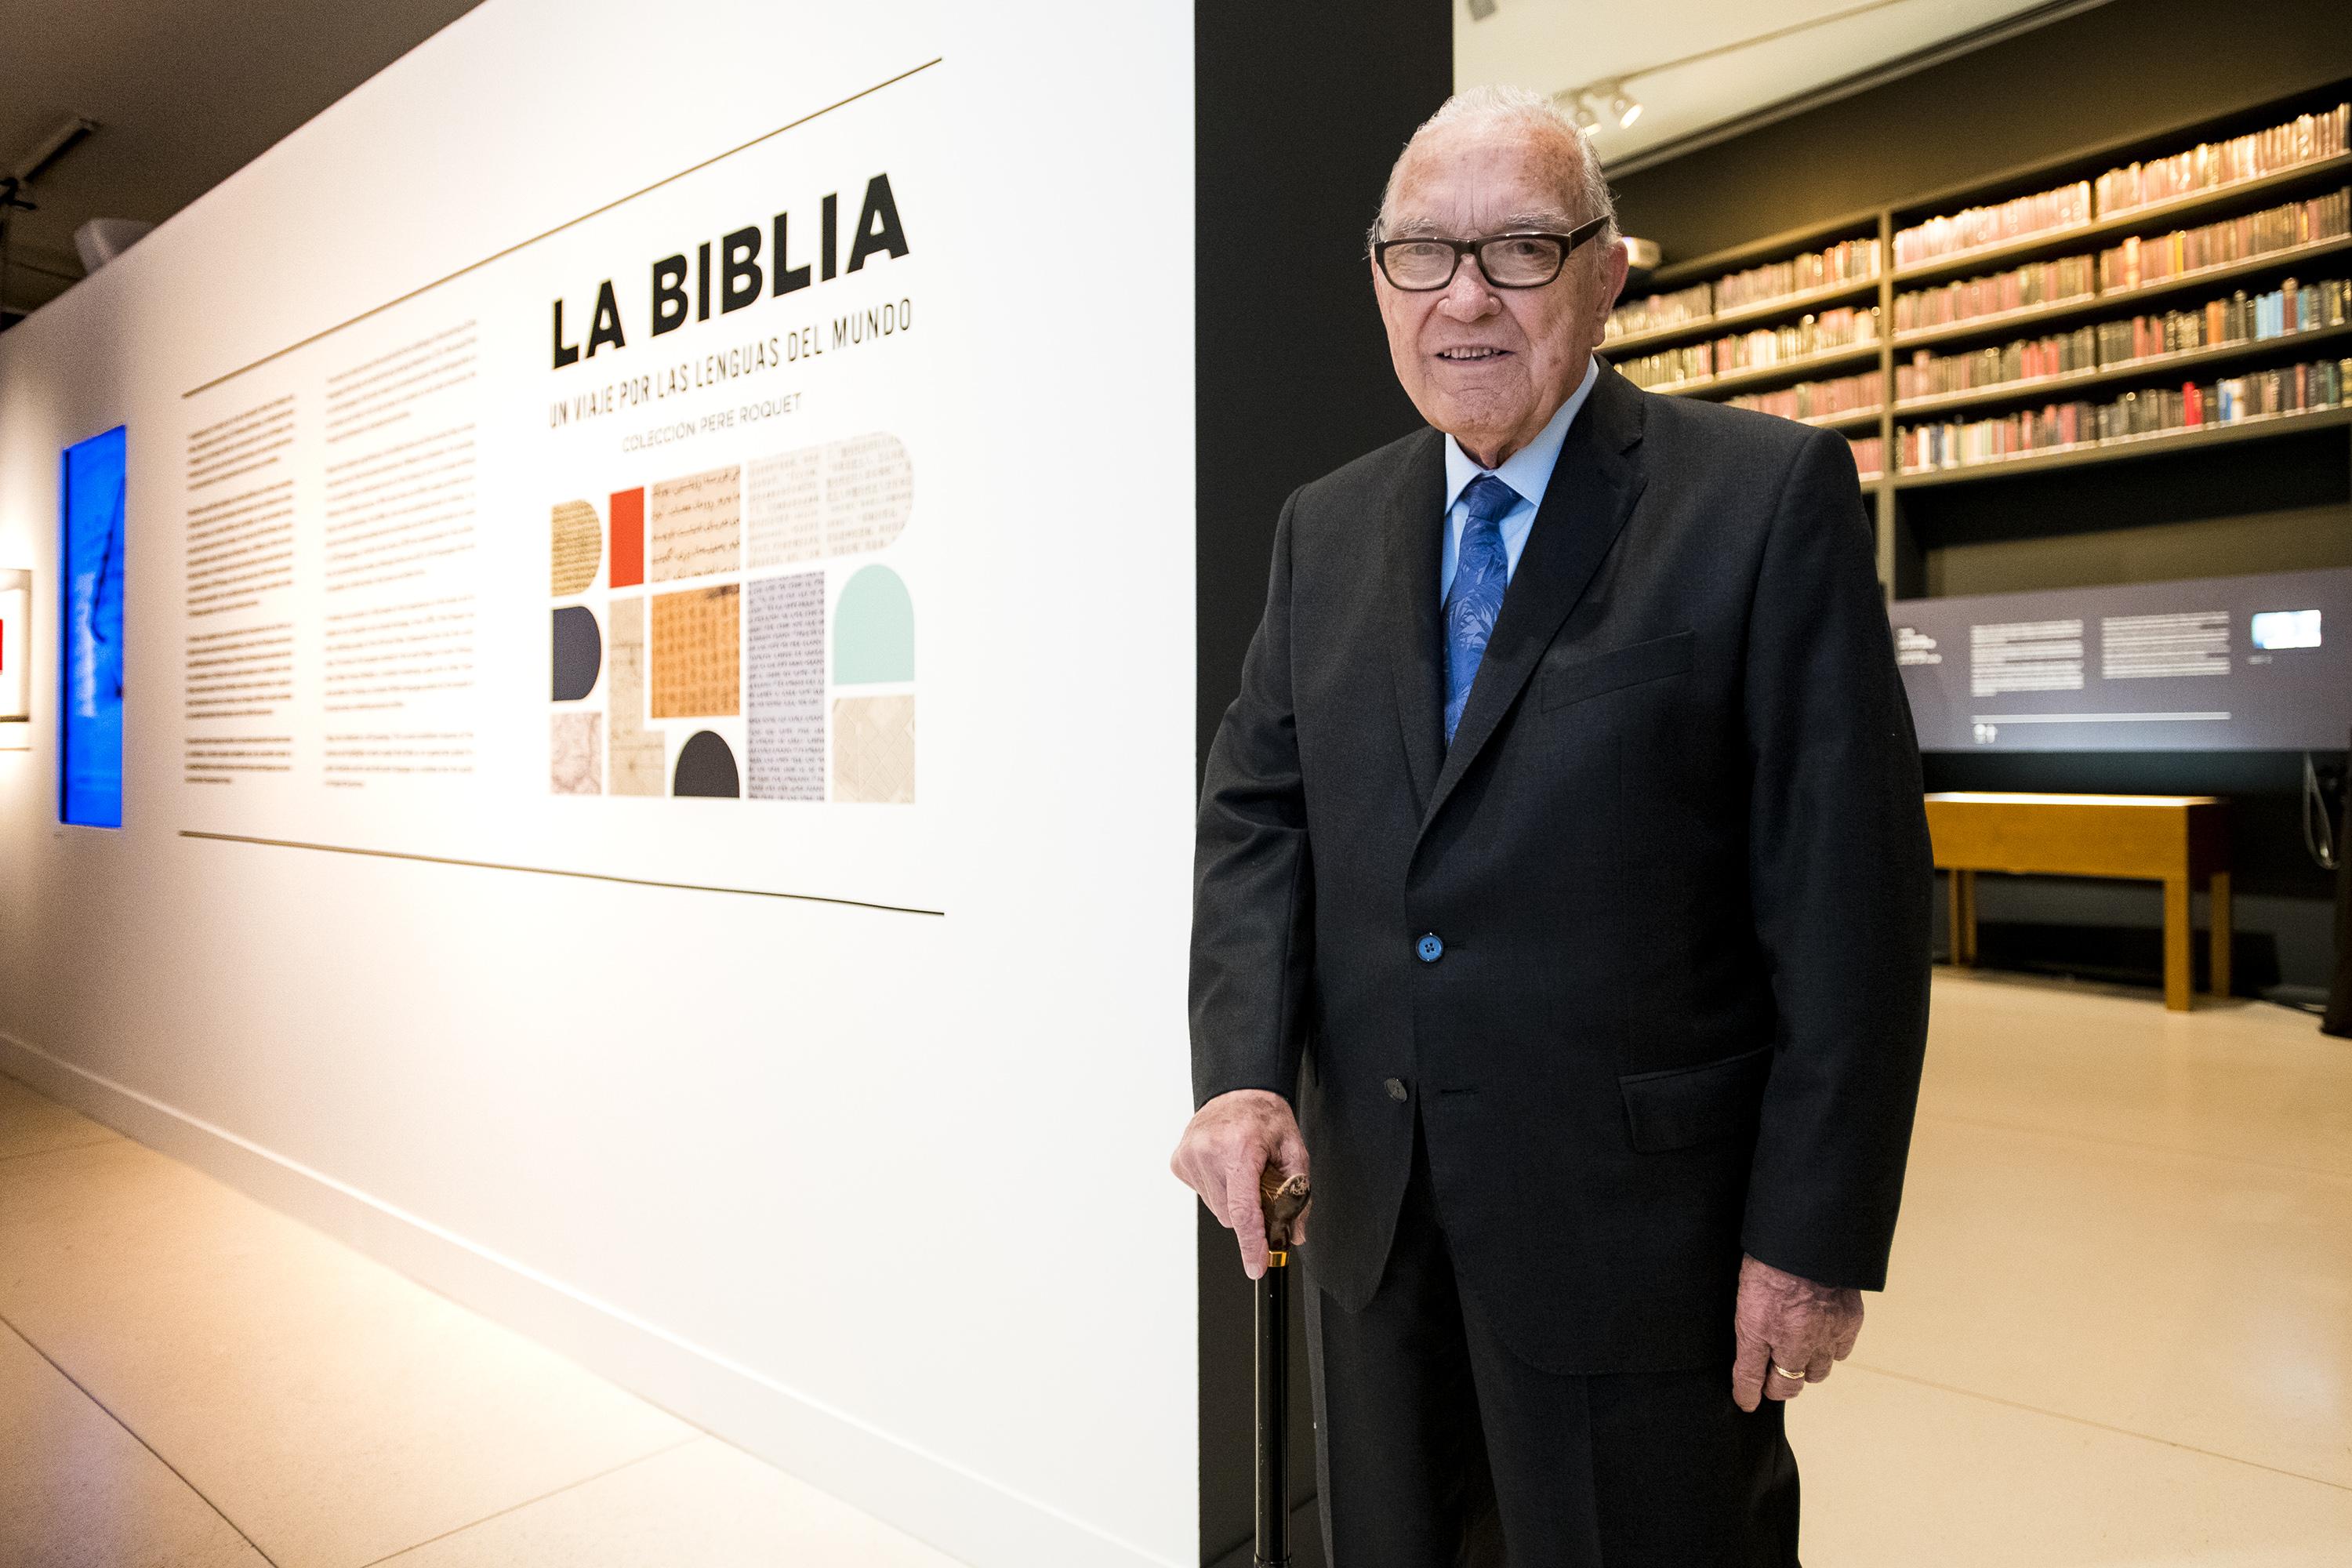 Pere Roquet, el impulsor de la colección de Biblias, que se muestran en CaixaForum Madrid, presentando la exposición La Biblia. Un viaje por las lenguas del mundo.